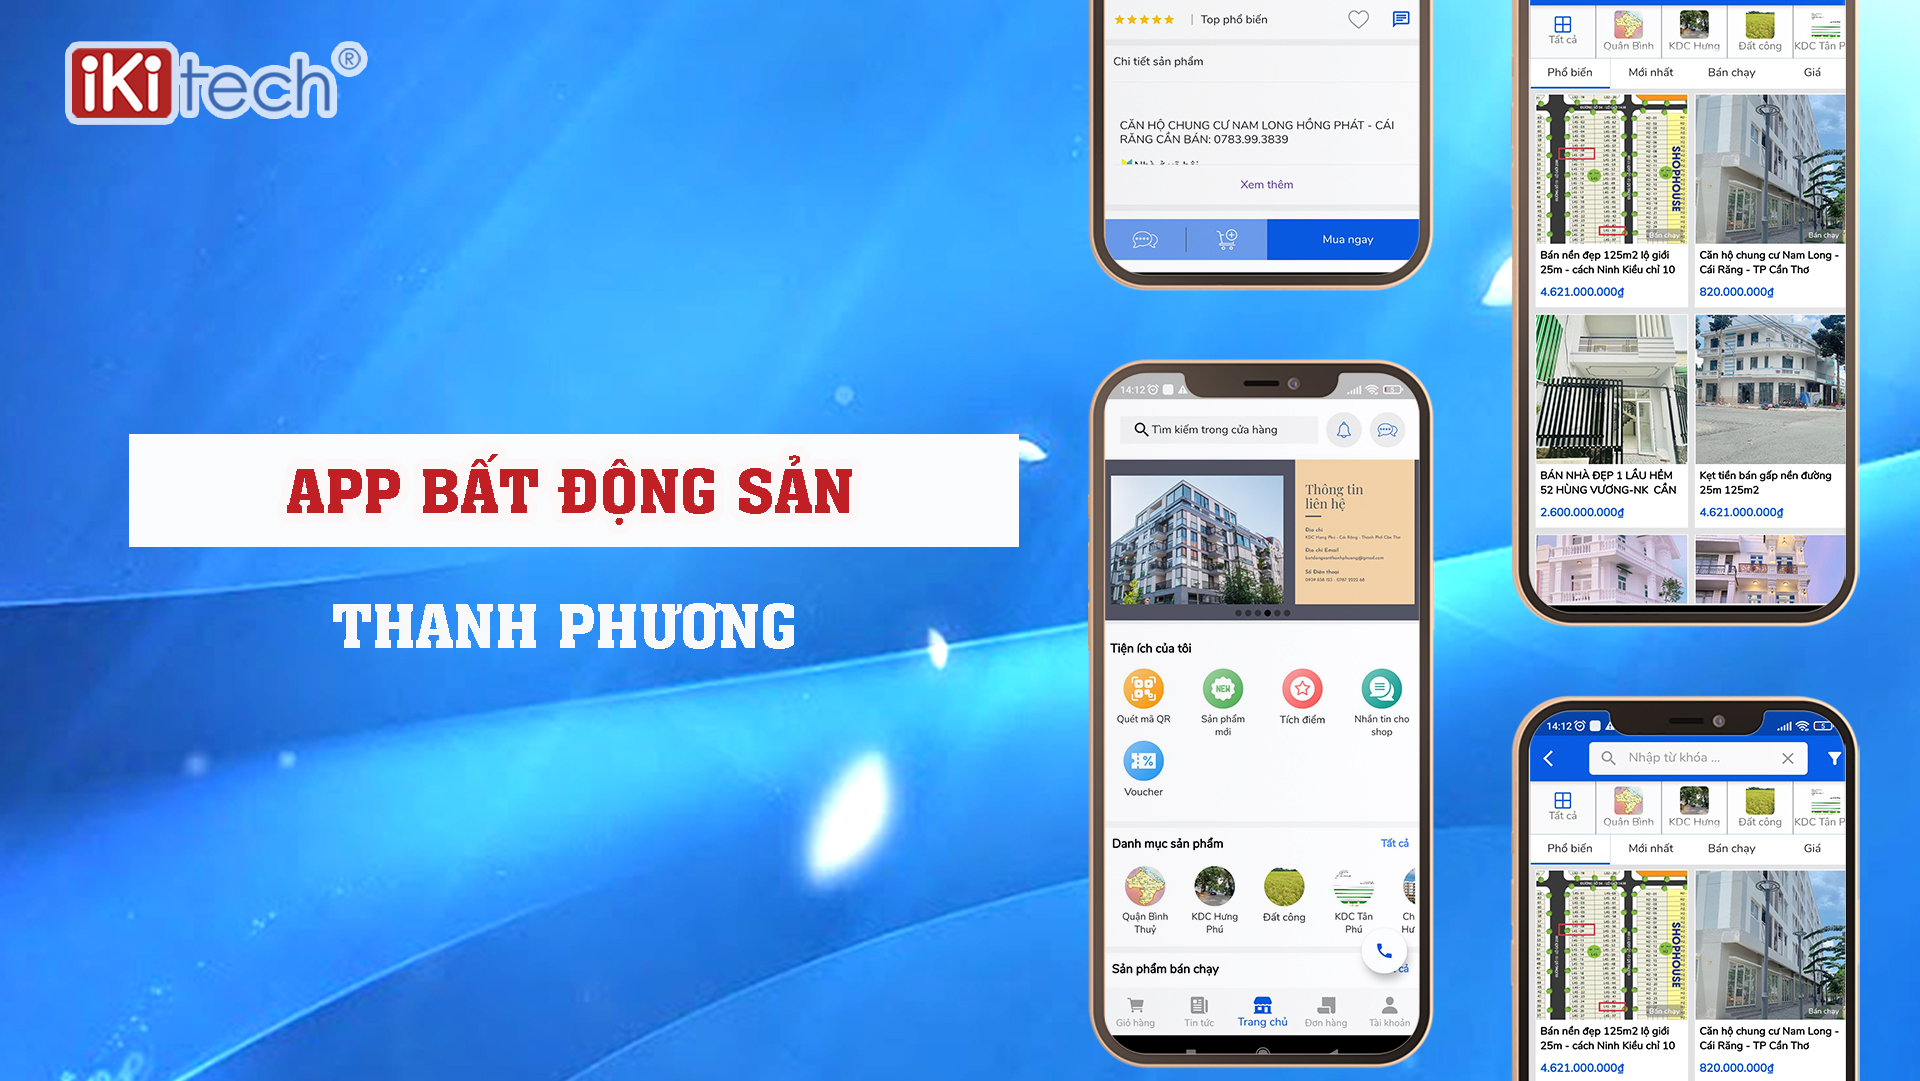 App Bất Động Sản Thanh Phương